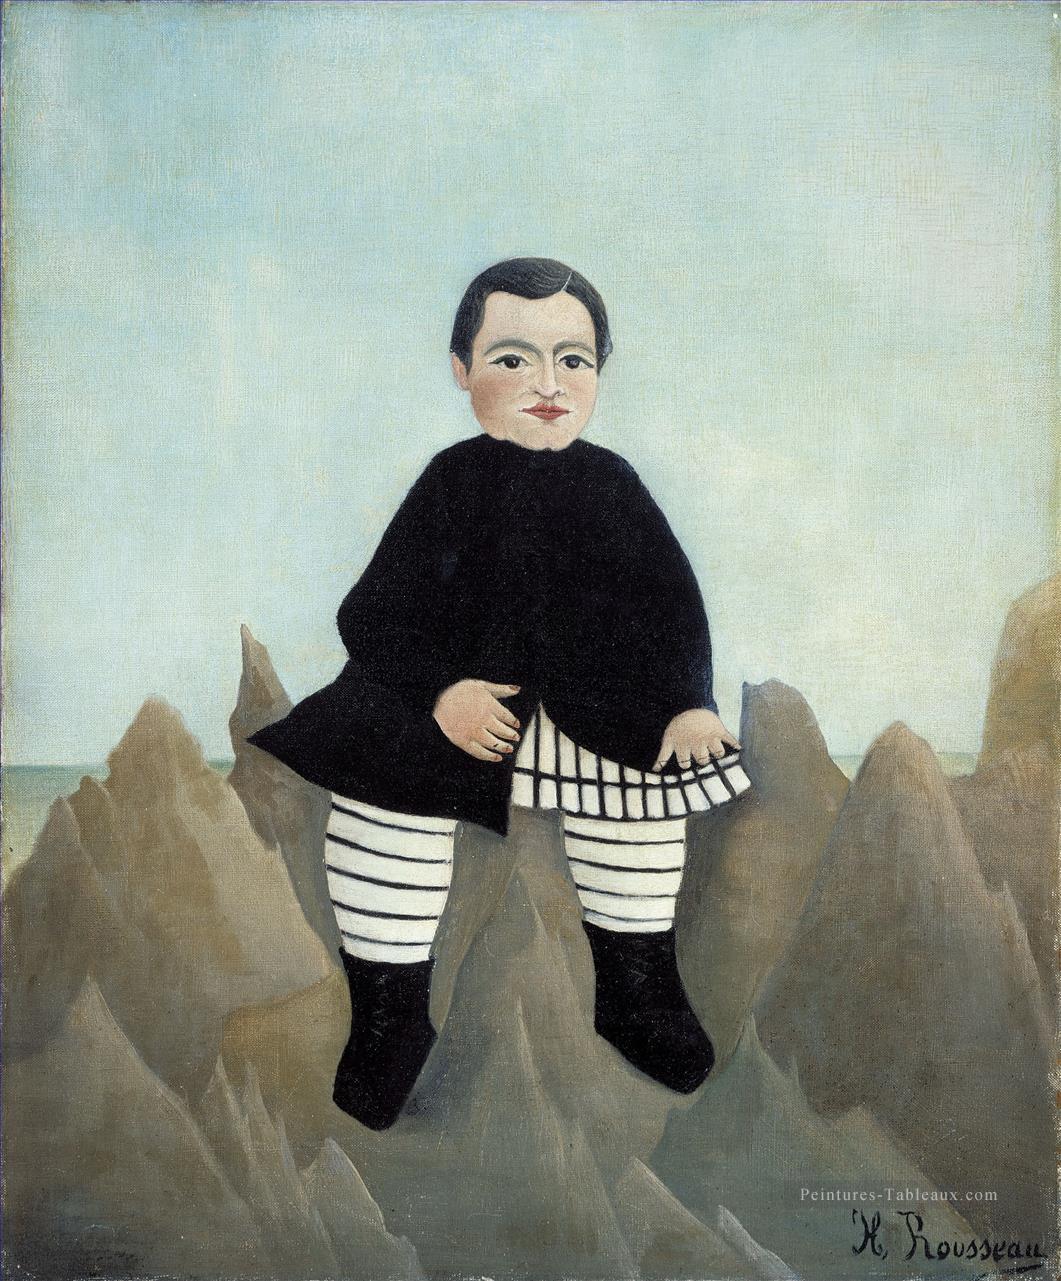 Boy on the Rocks enfant aux rochers Henri Rousseau post impressionnisme Naive primitivisme Peintures à l'huile